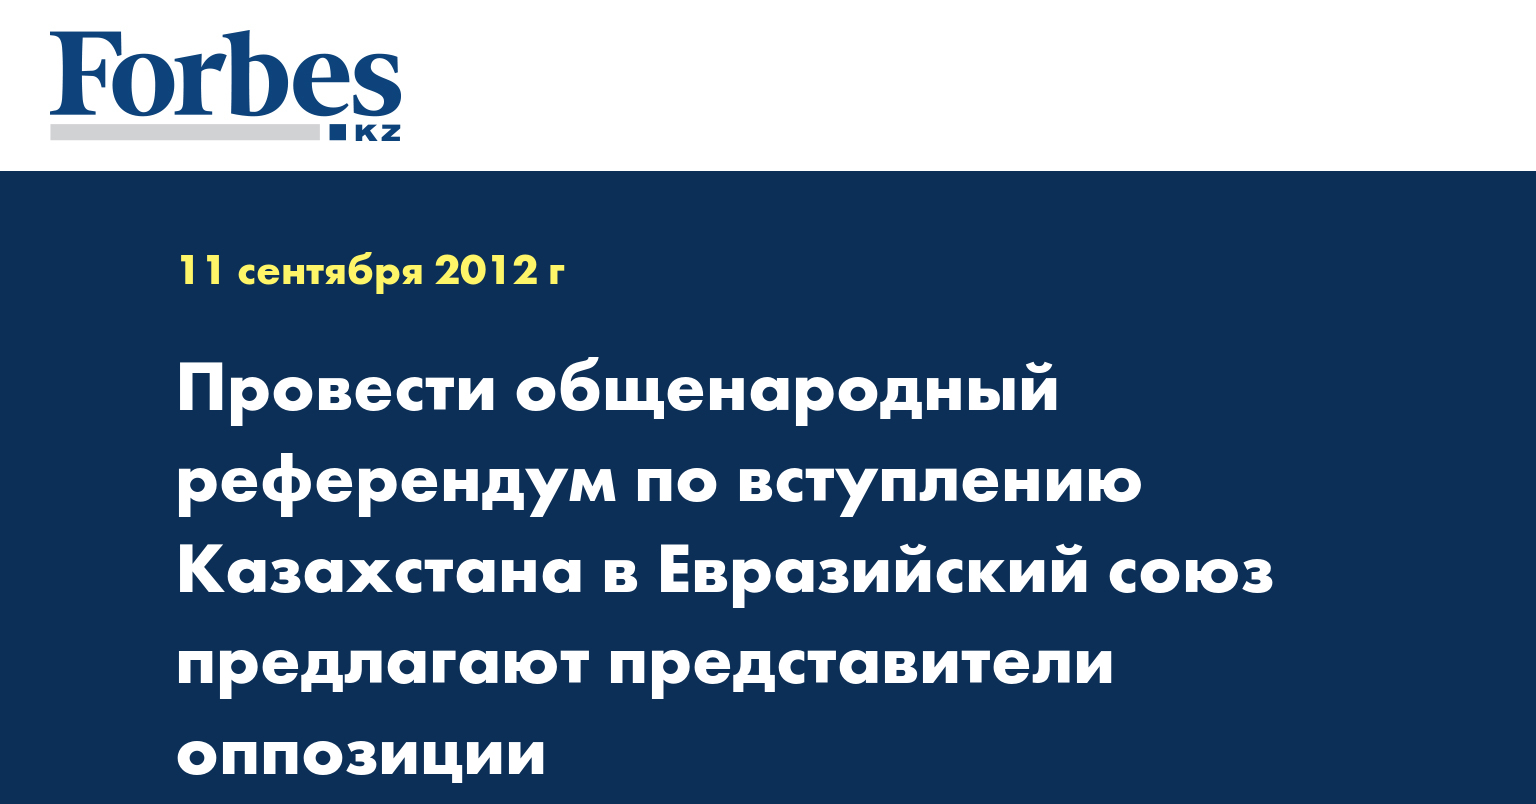 Провести общенародный референдум по вступлению Казахстана в Евразийский союз предлагают представители оппозиции